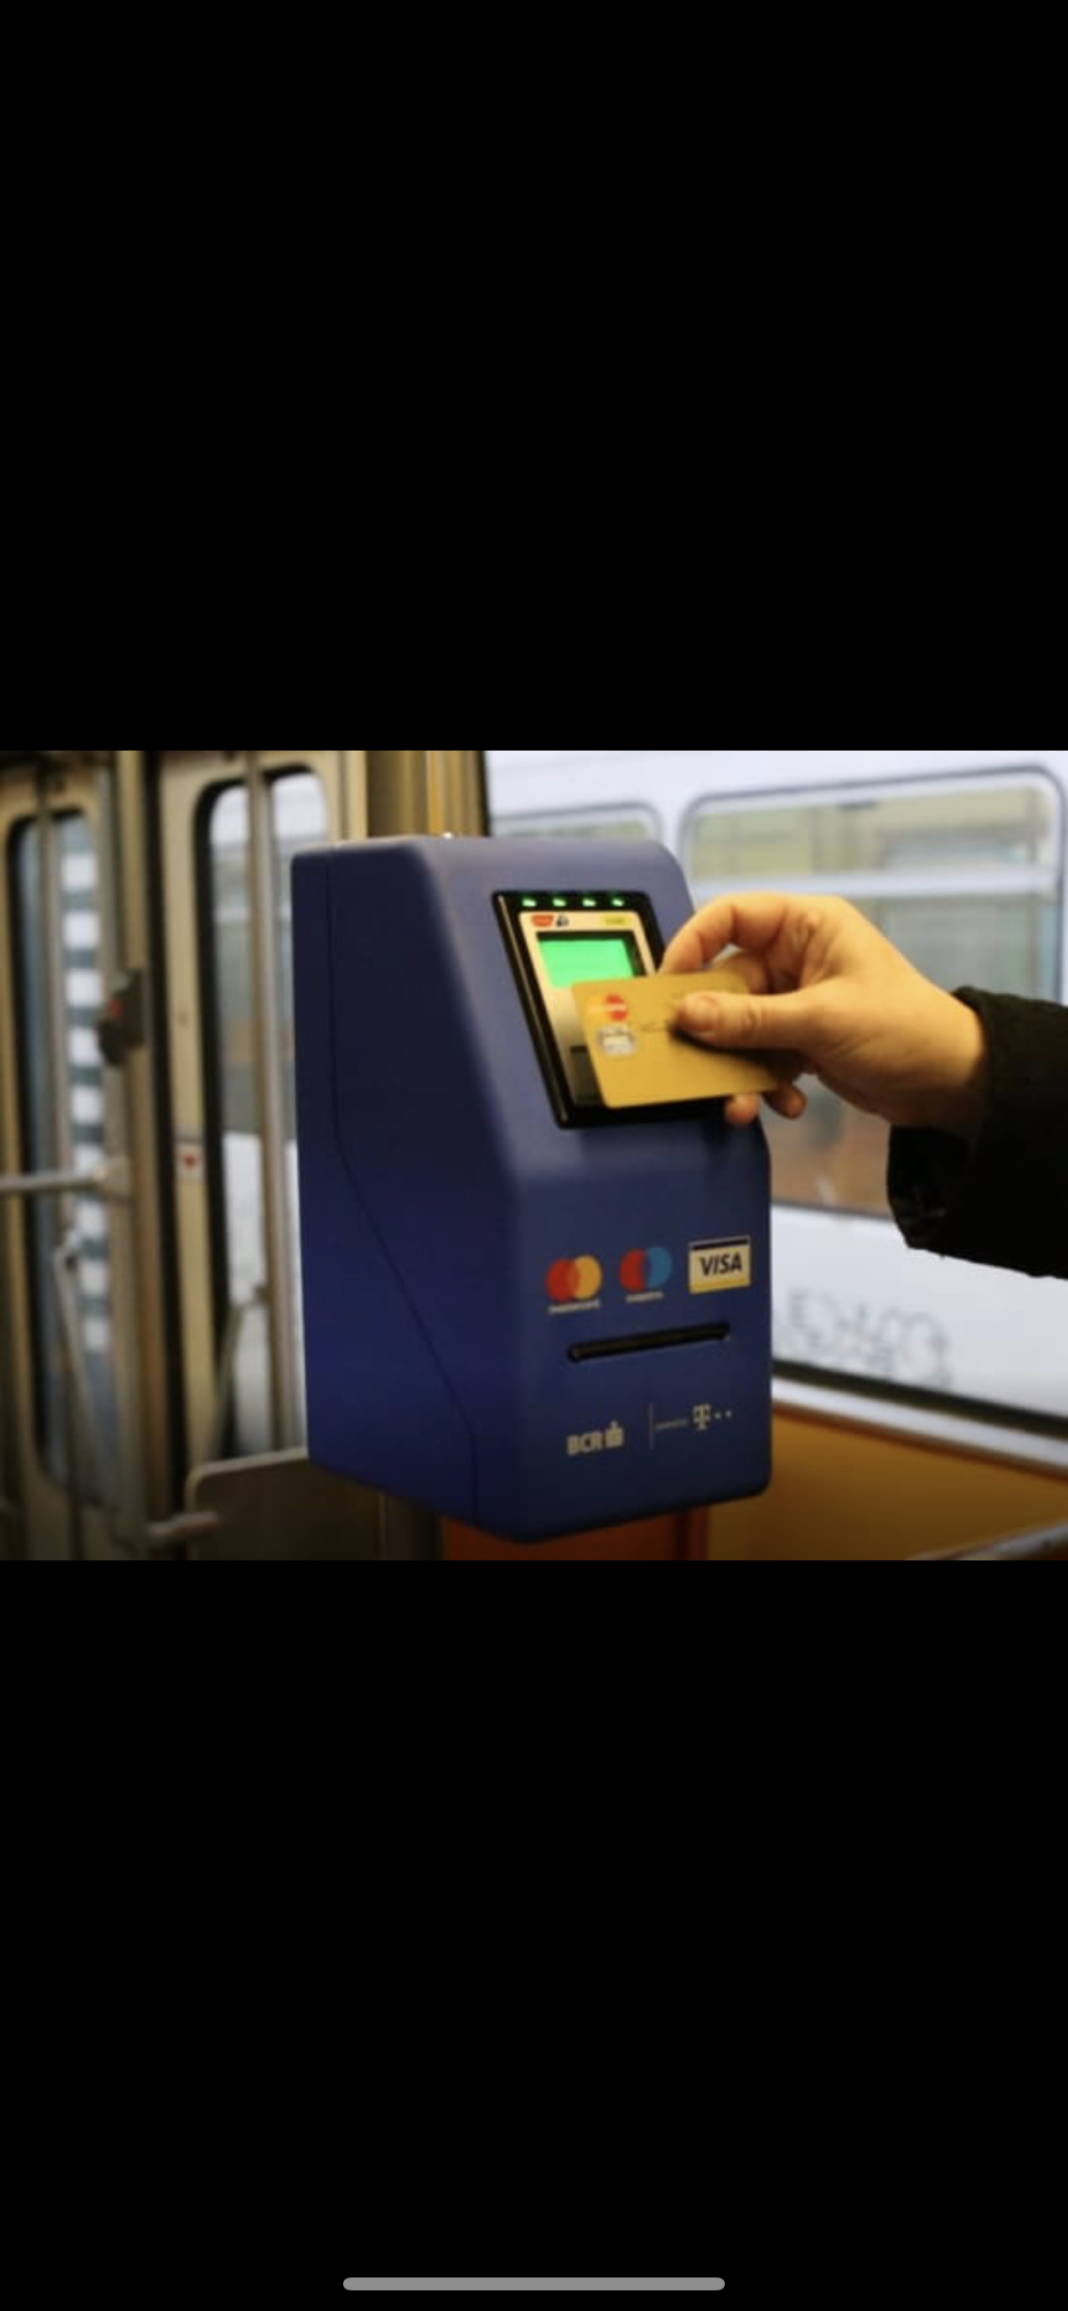 RAT Craiova va introduce din această vară plata cu cardul contactless direct în mijloacele de transport public